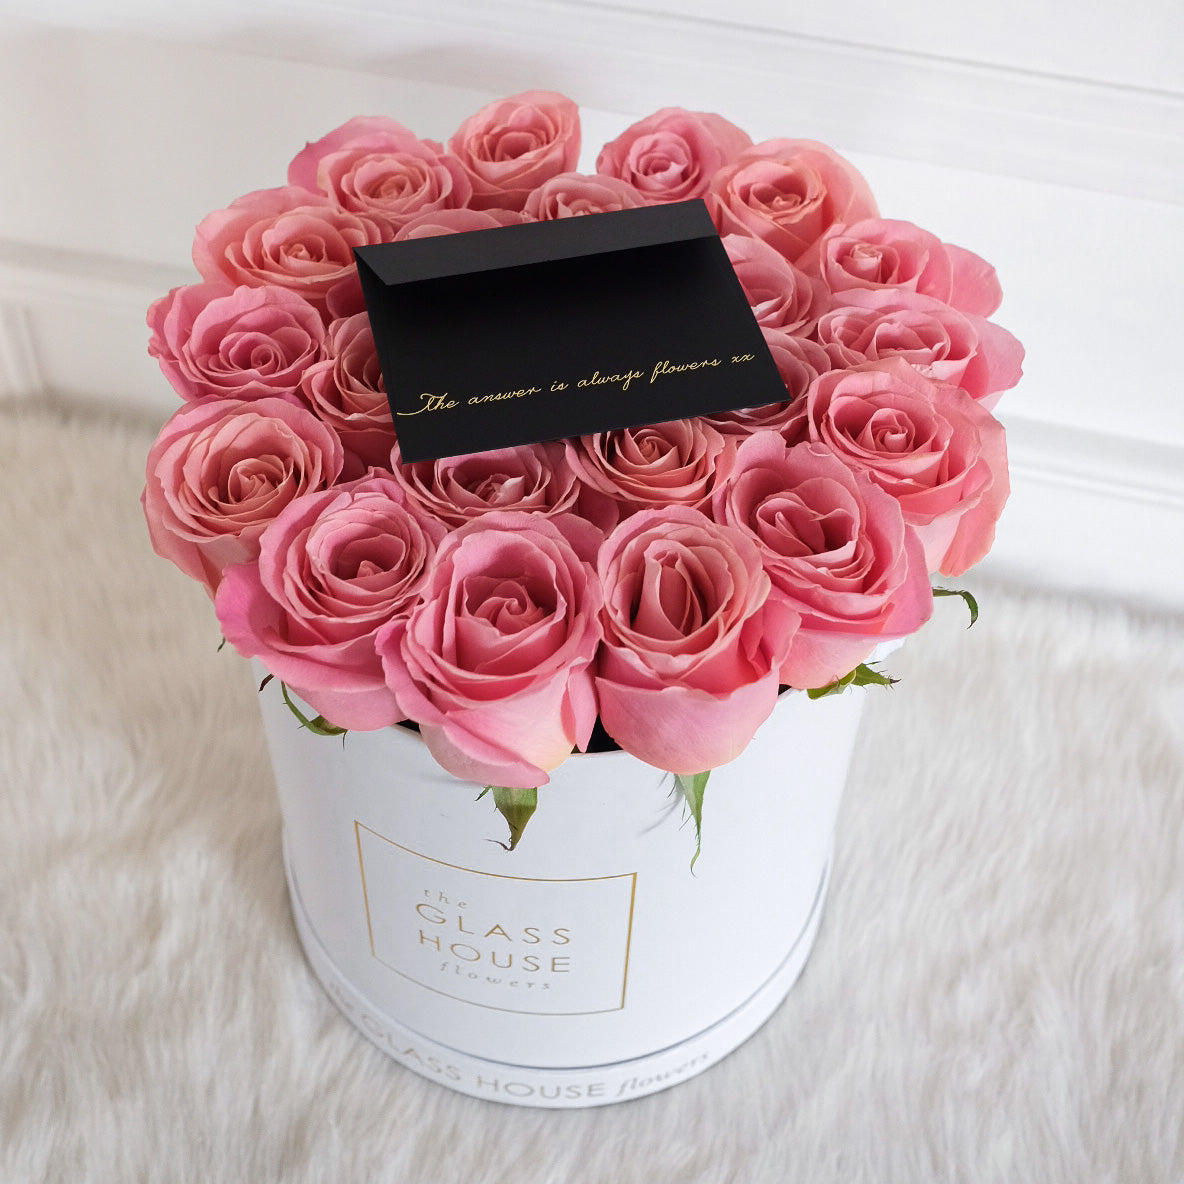 Roses - Large Round Box